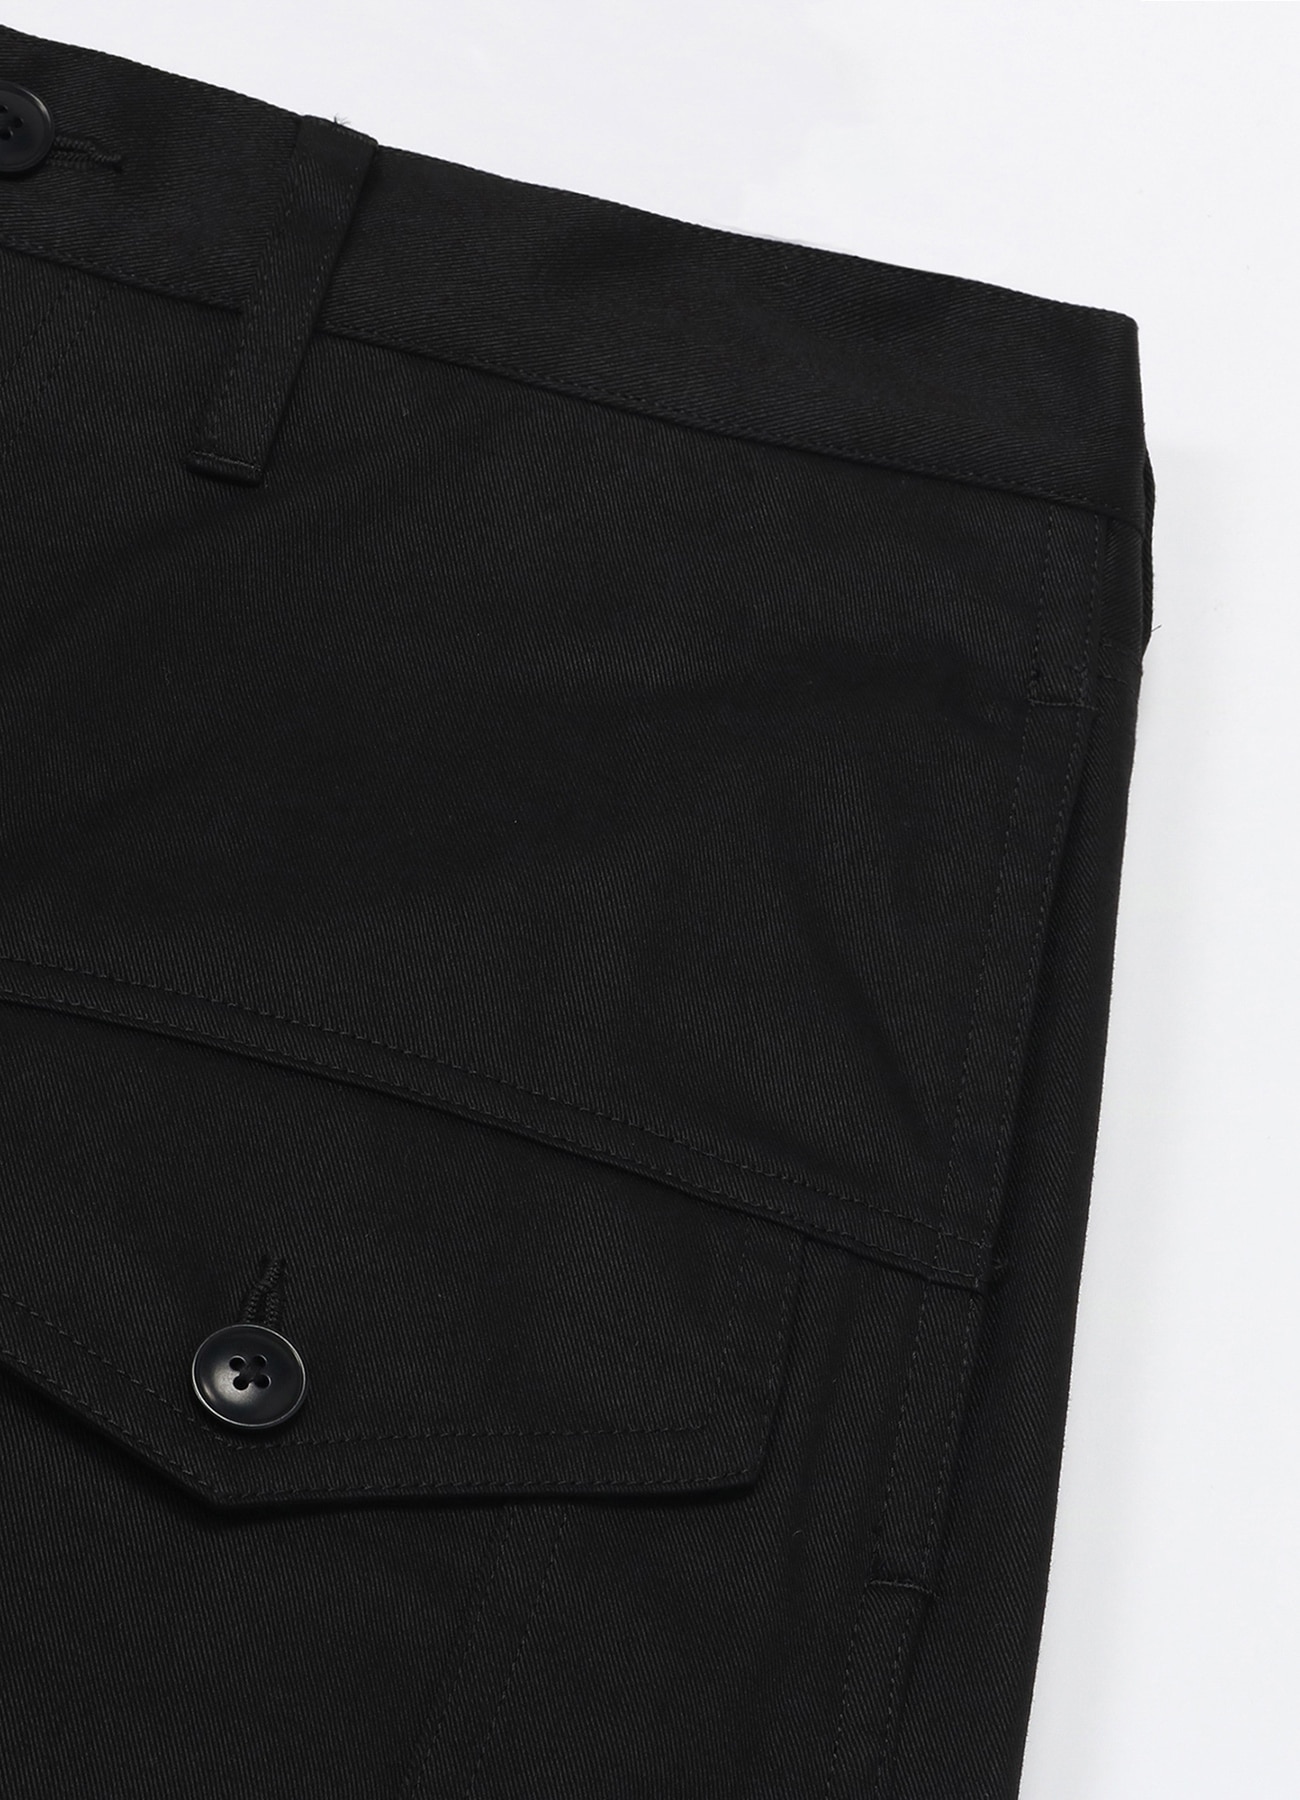 Cotton Chino Jeans Silhouette 3rd Pants(XS BLACK): YOHJI YAMAMOTO｜WILDSIDE  YOHJI YAMAMOTO [Official